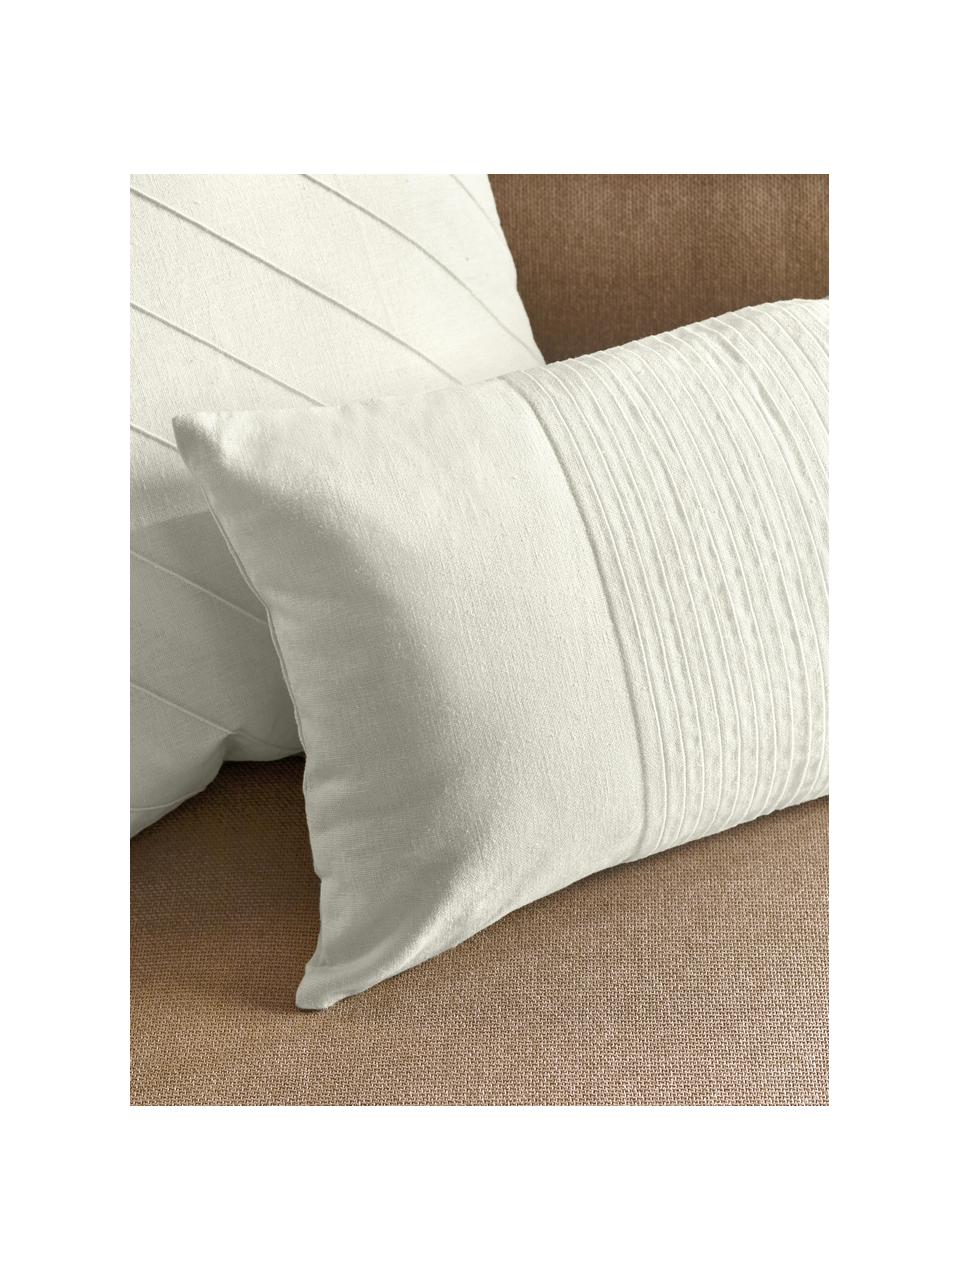 Leinen-Kissenhülle Dalia Weiß mit Strukturmuster, 51 % Leinen, 49 % Baumwolle, Weiß, B 30 x L 50 cm